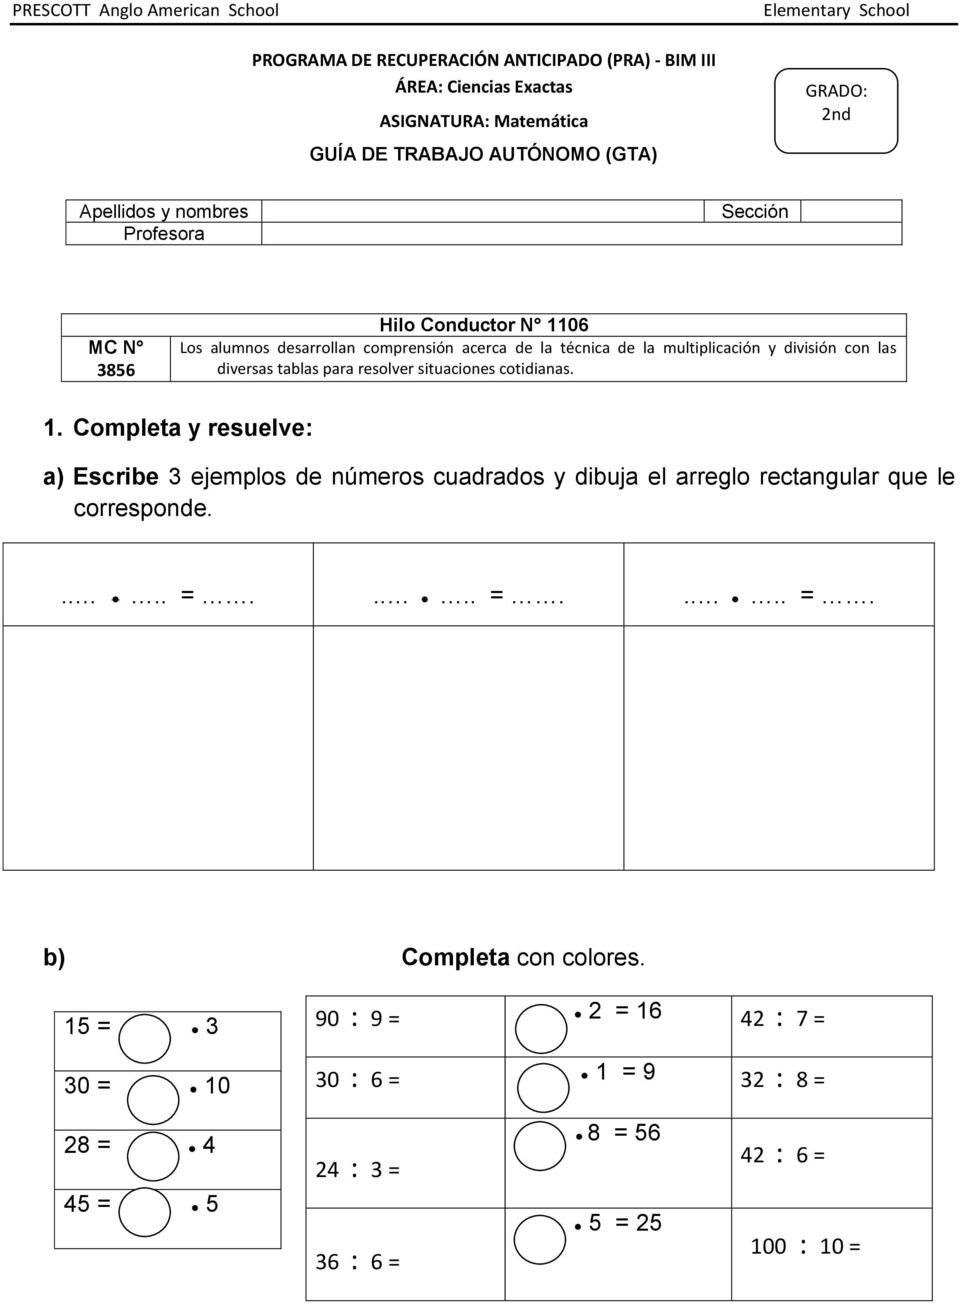 Completa y resuelve: a) Escribe 3 ejemplos de números cuadrados y dibuja el arreglo rectangular que le corresponde..... =.